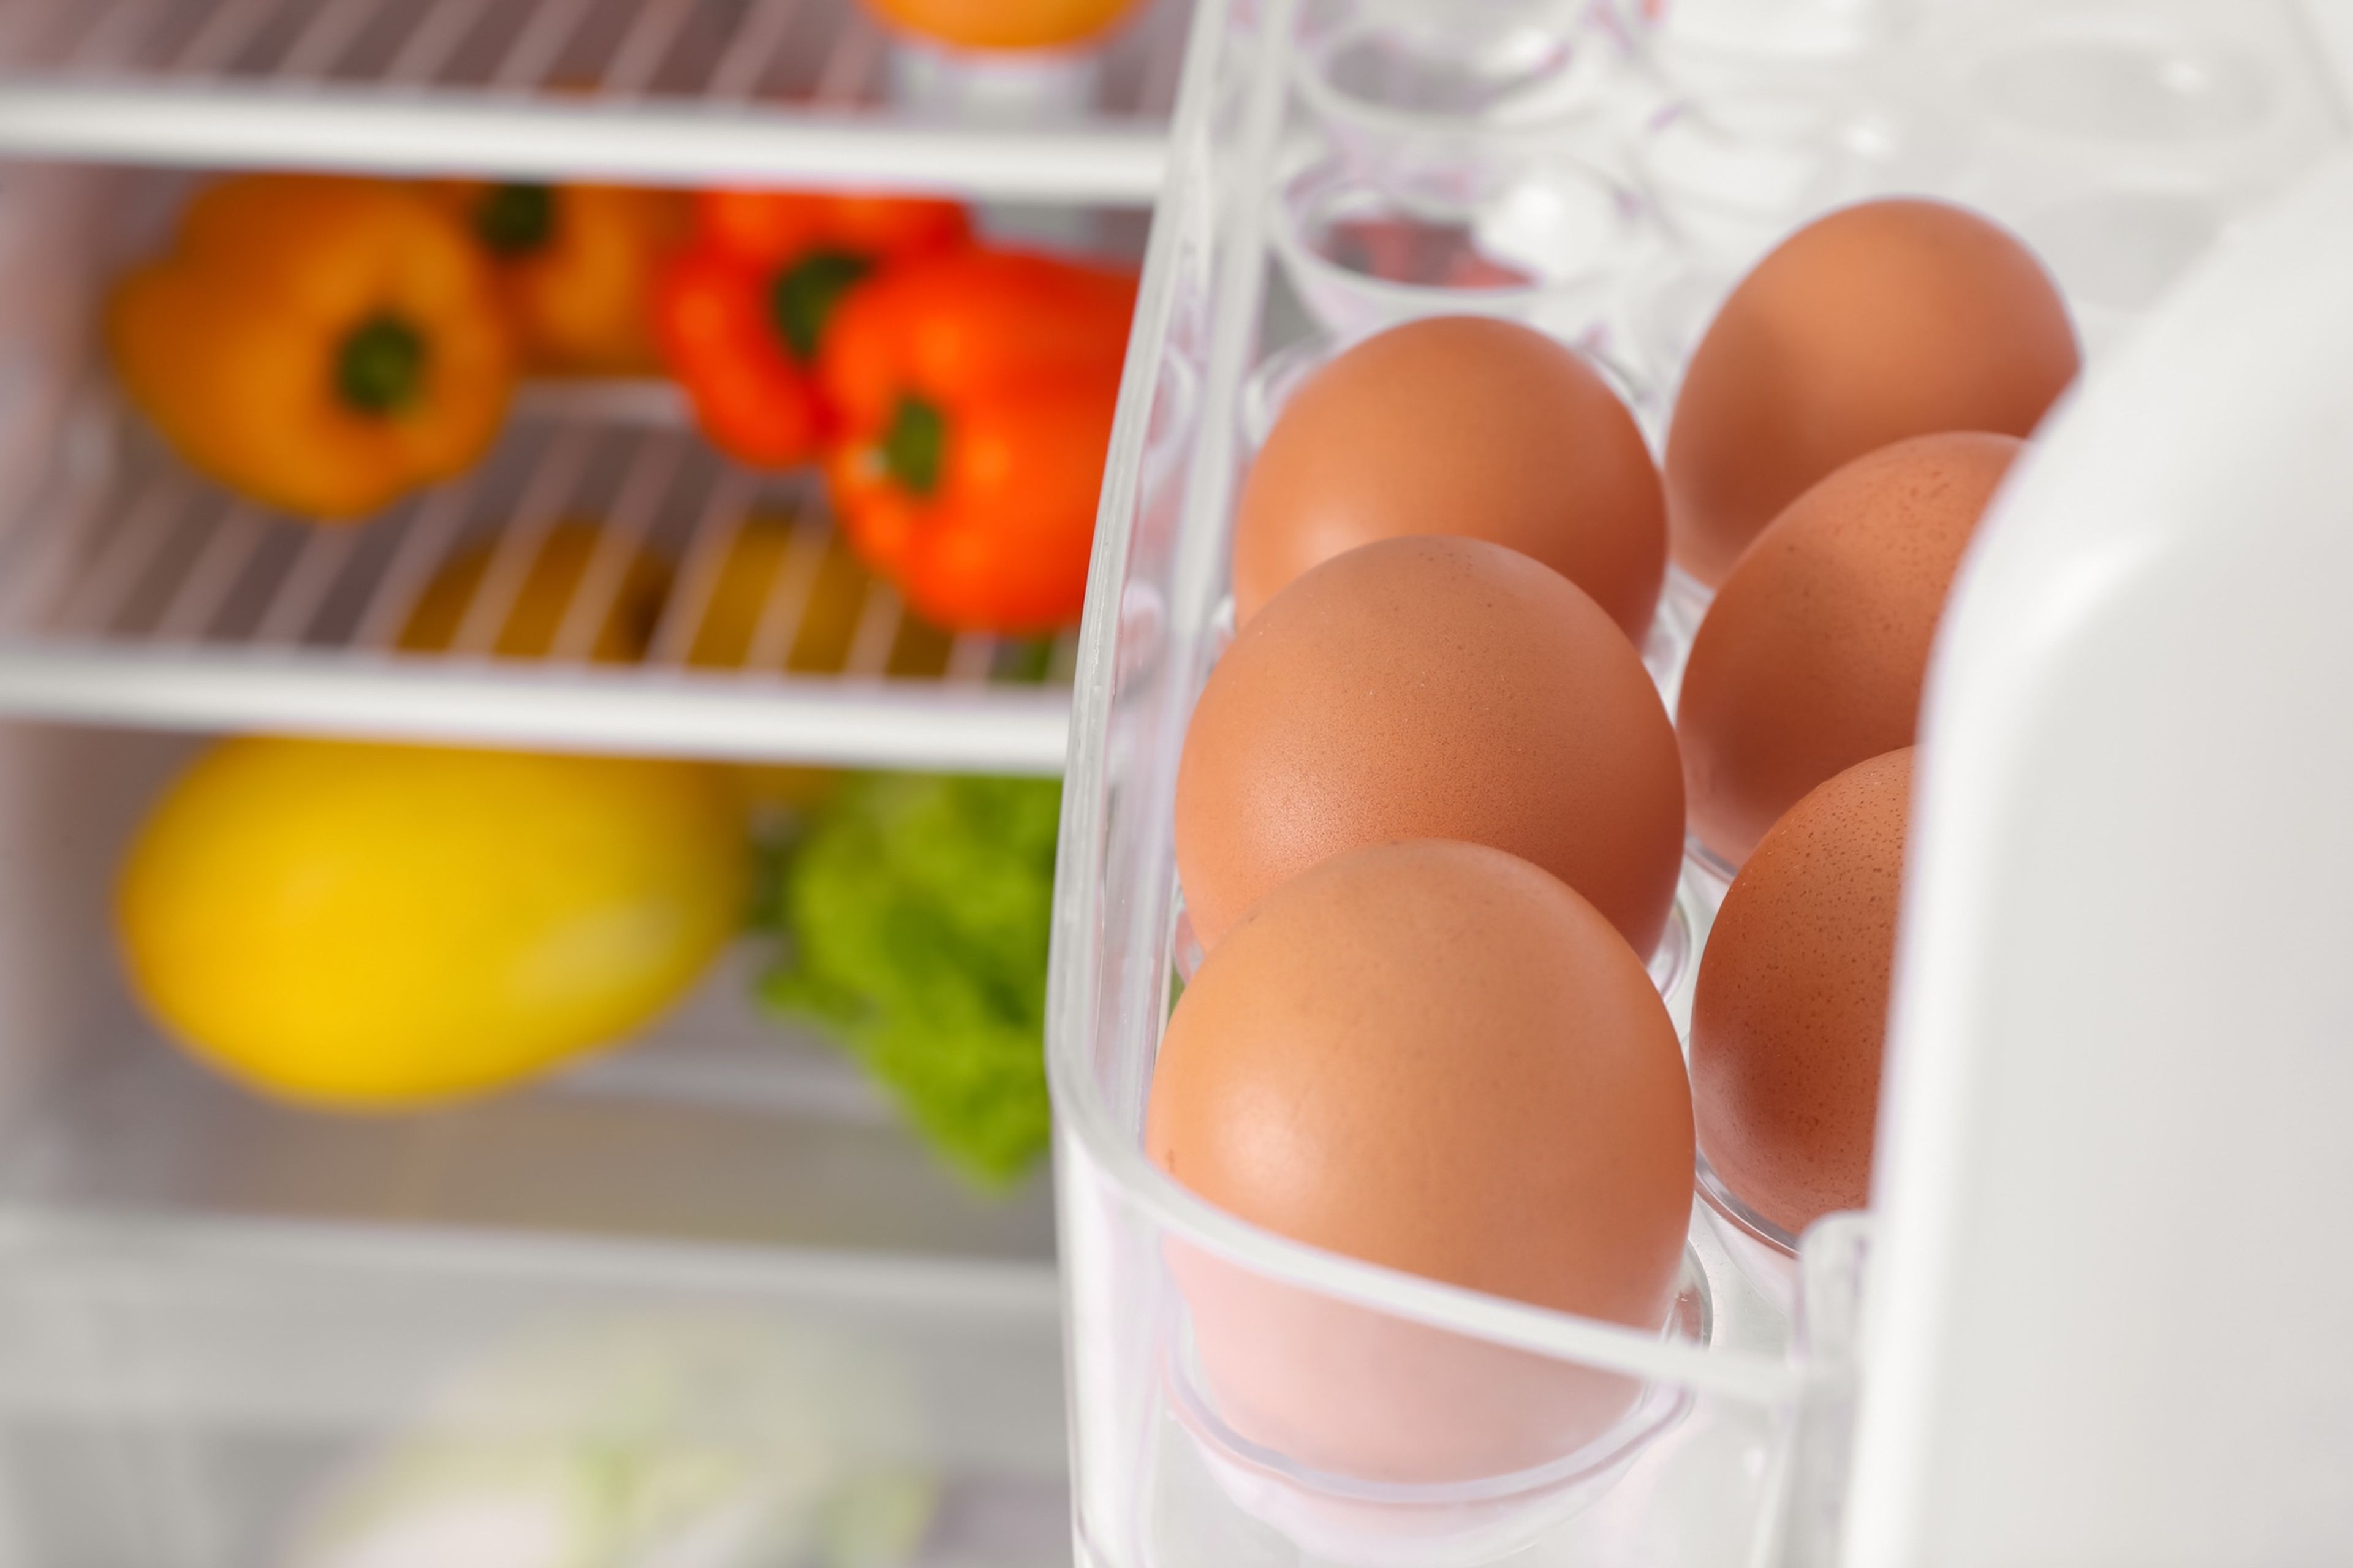 Huevos en la puerta de un frigorífico